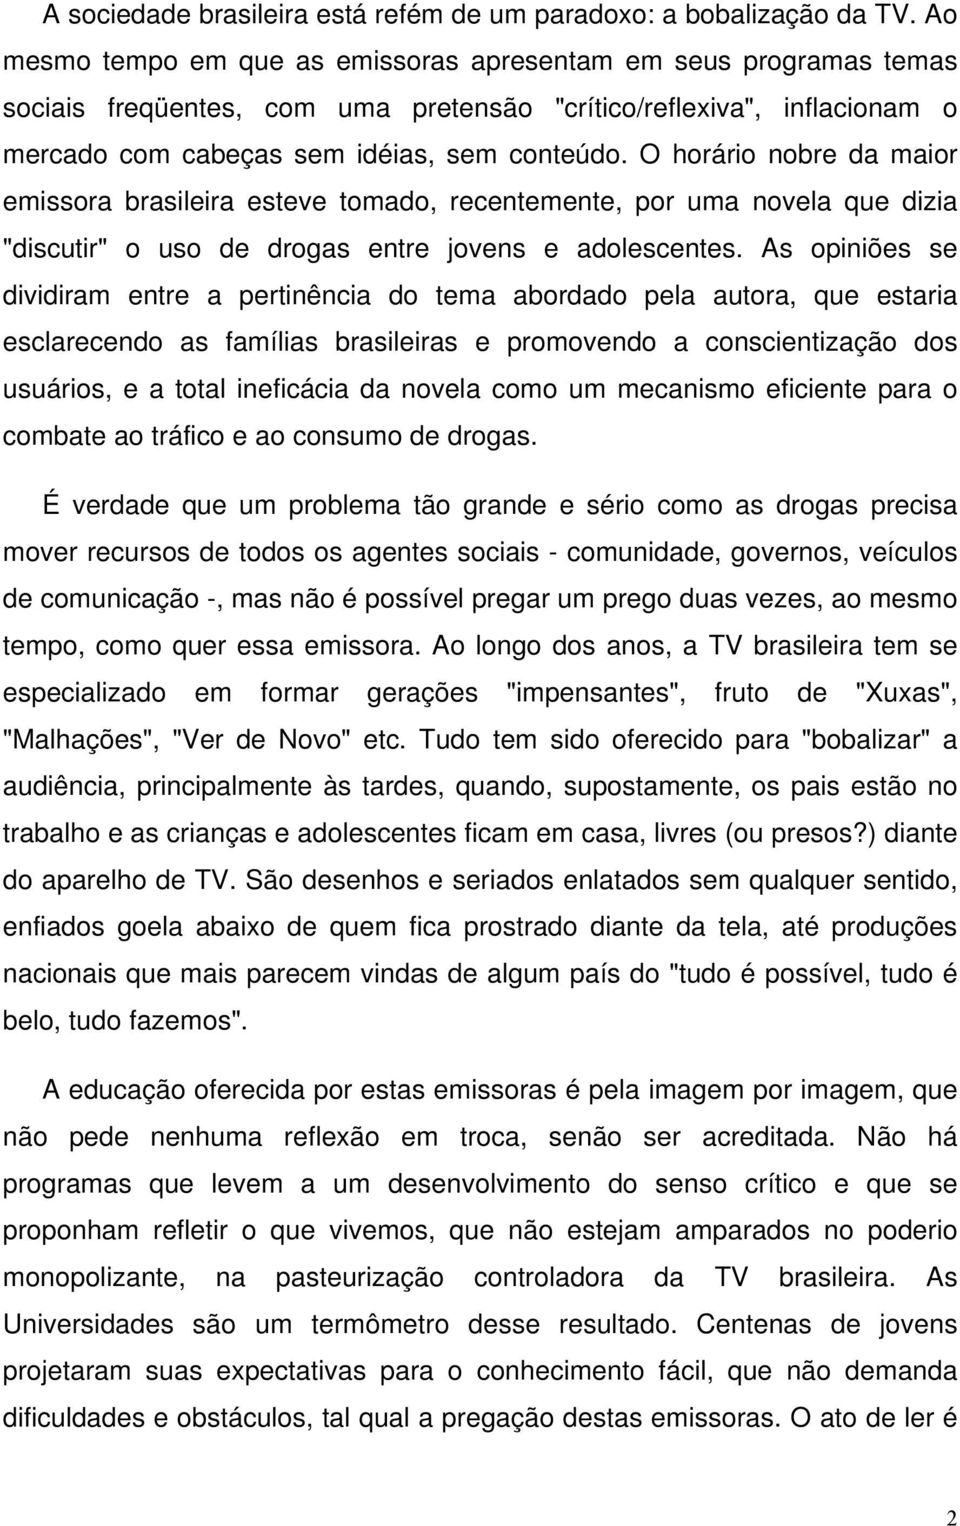 O horário nobre da maior emissora brasileira esteve tomado, recentemente, por uma novela que dizia "discutir" o uso de drogas entre jovens e adolescentes.